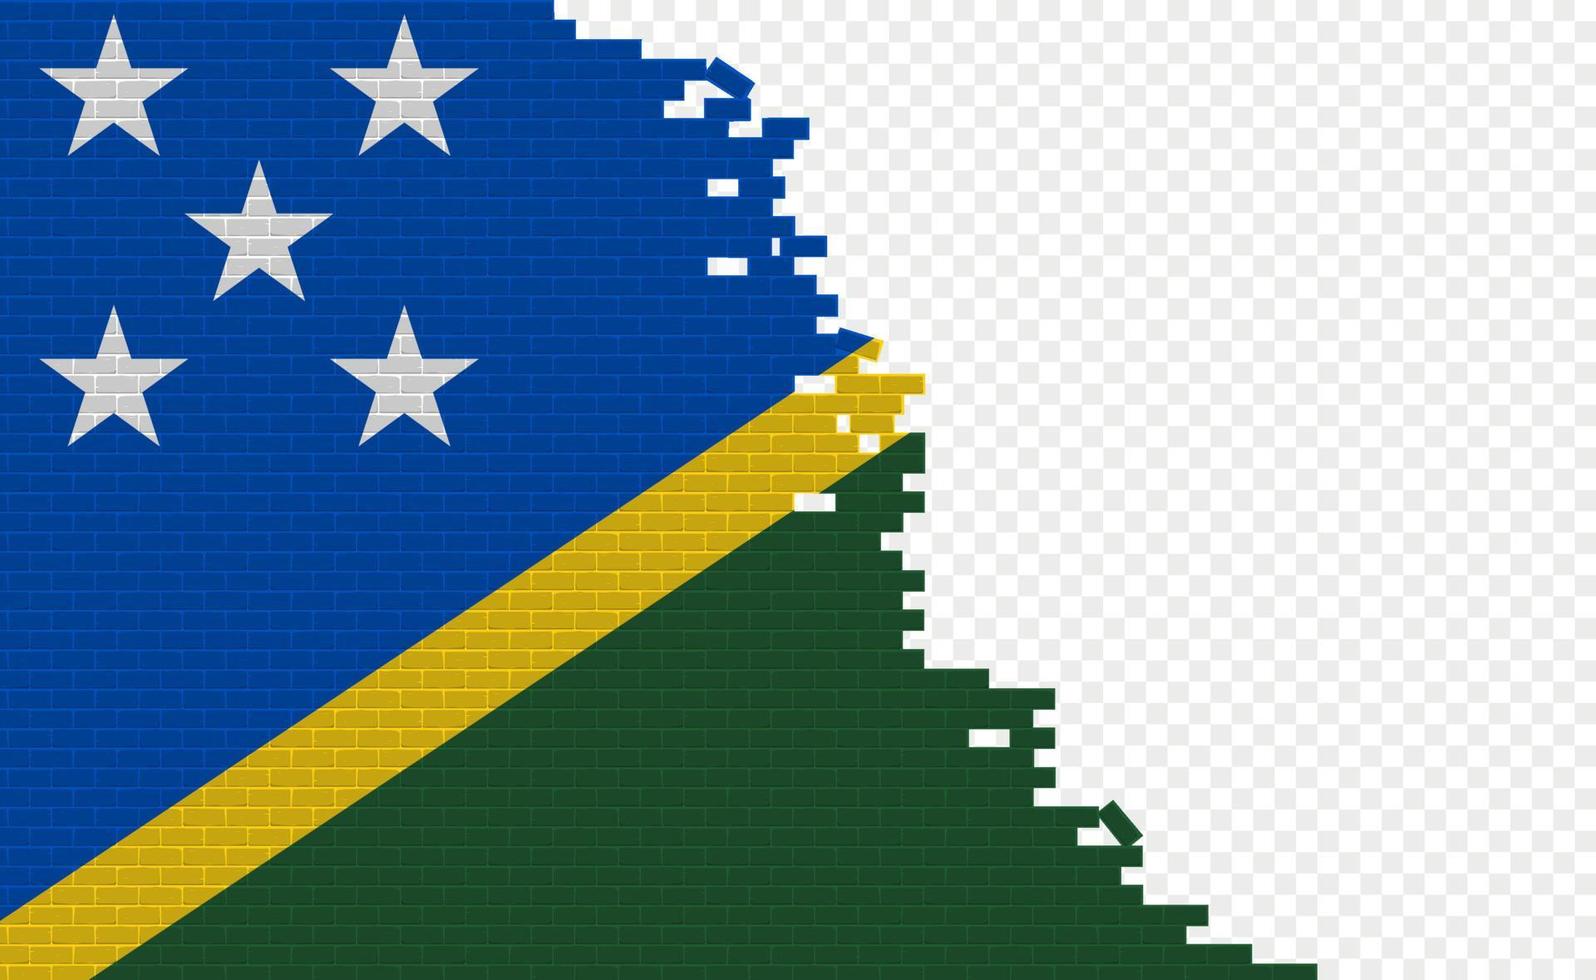 Flagge der Salomonen auf gebrochener Ziegelwand. leeres Flaggenfeld eines anderen Landes. Ländervergleich. einfache Bearbeitung und Vektor in Gruppen.